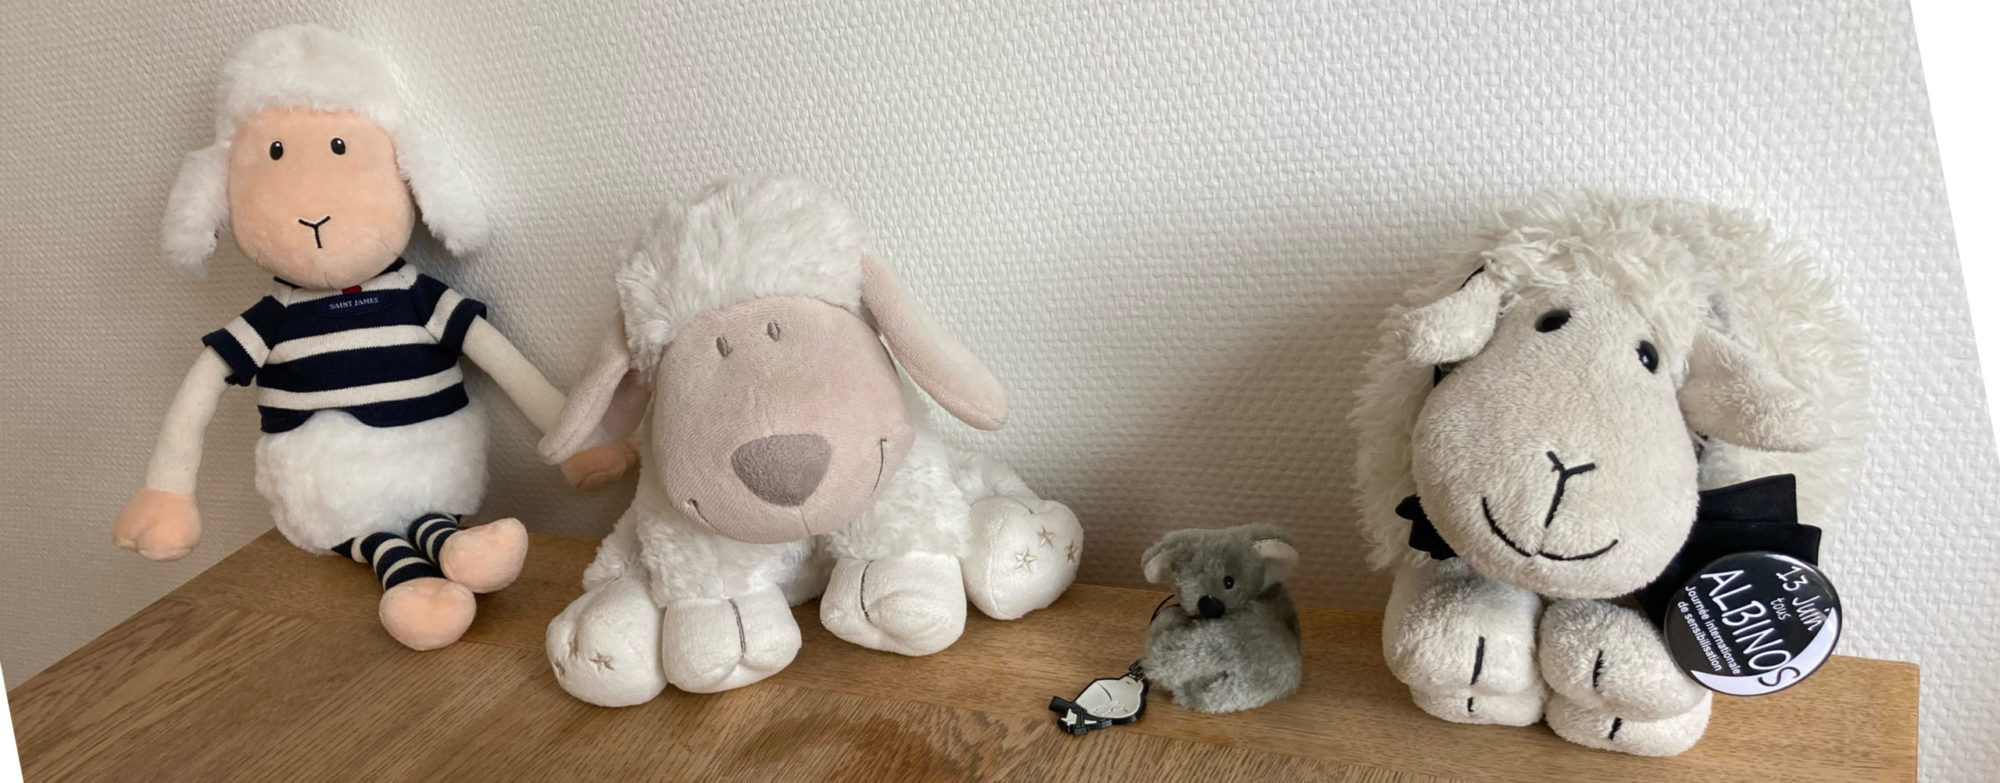 Vandeau de la V1 du blogue, Petit Mouton, Petit Koala, Cousin Mouton, et Petit Agneau des prés Sale (des peluches) sont aligés sur une commode.